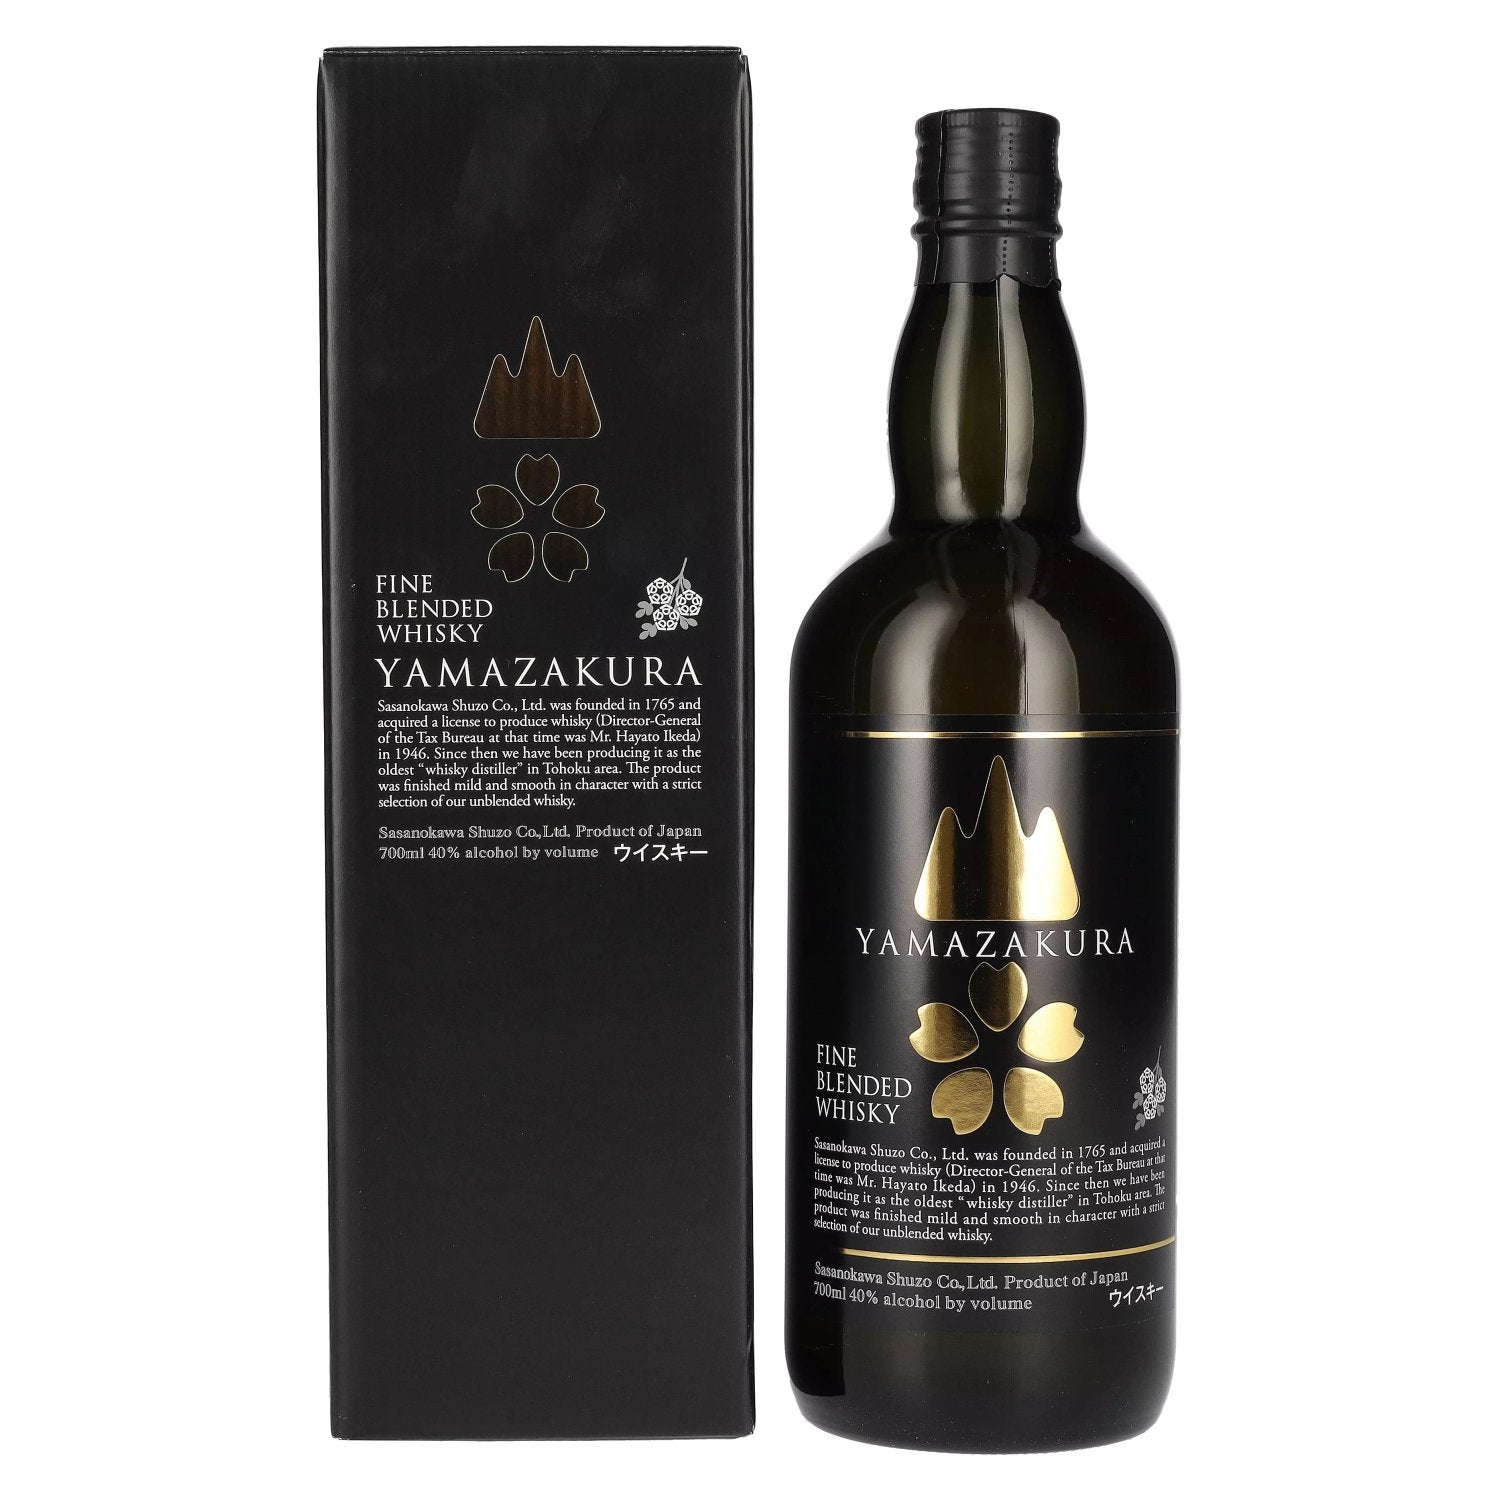 Yamazakura Blended Whisky Black Label 40% Vol. 0,7l in Giftbox